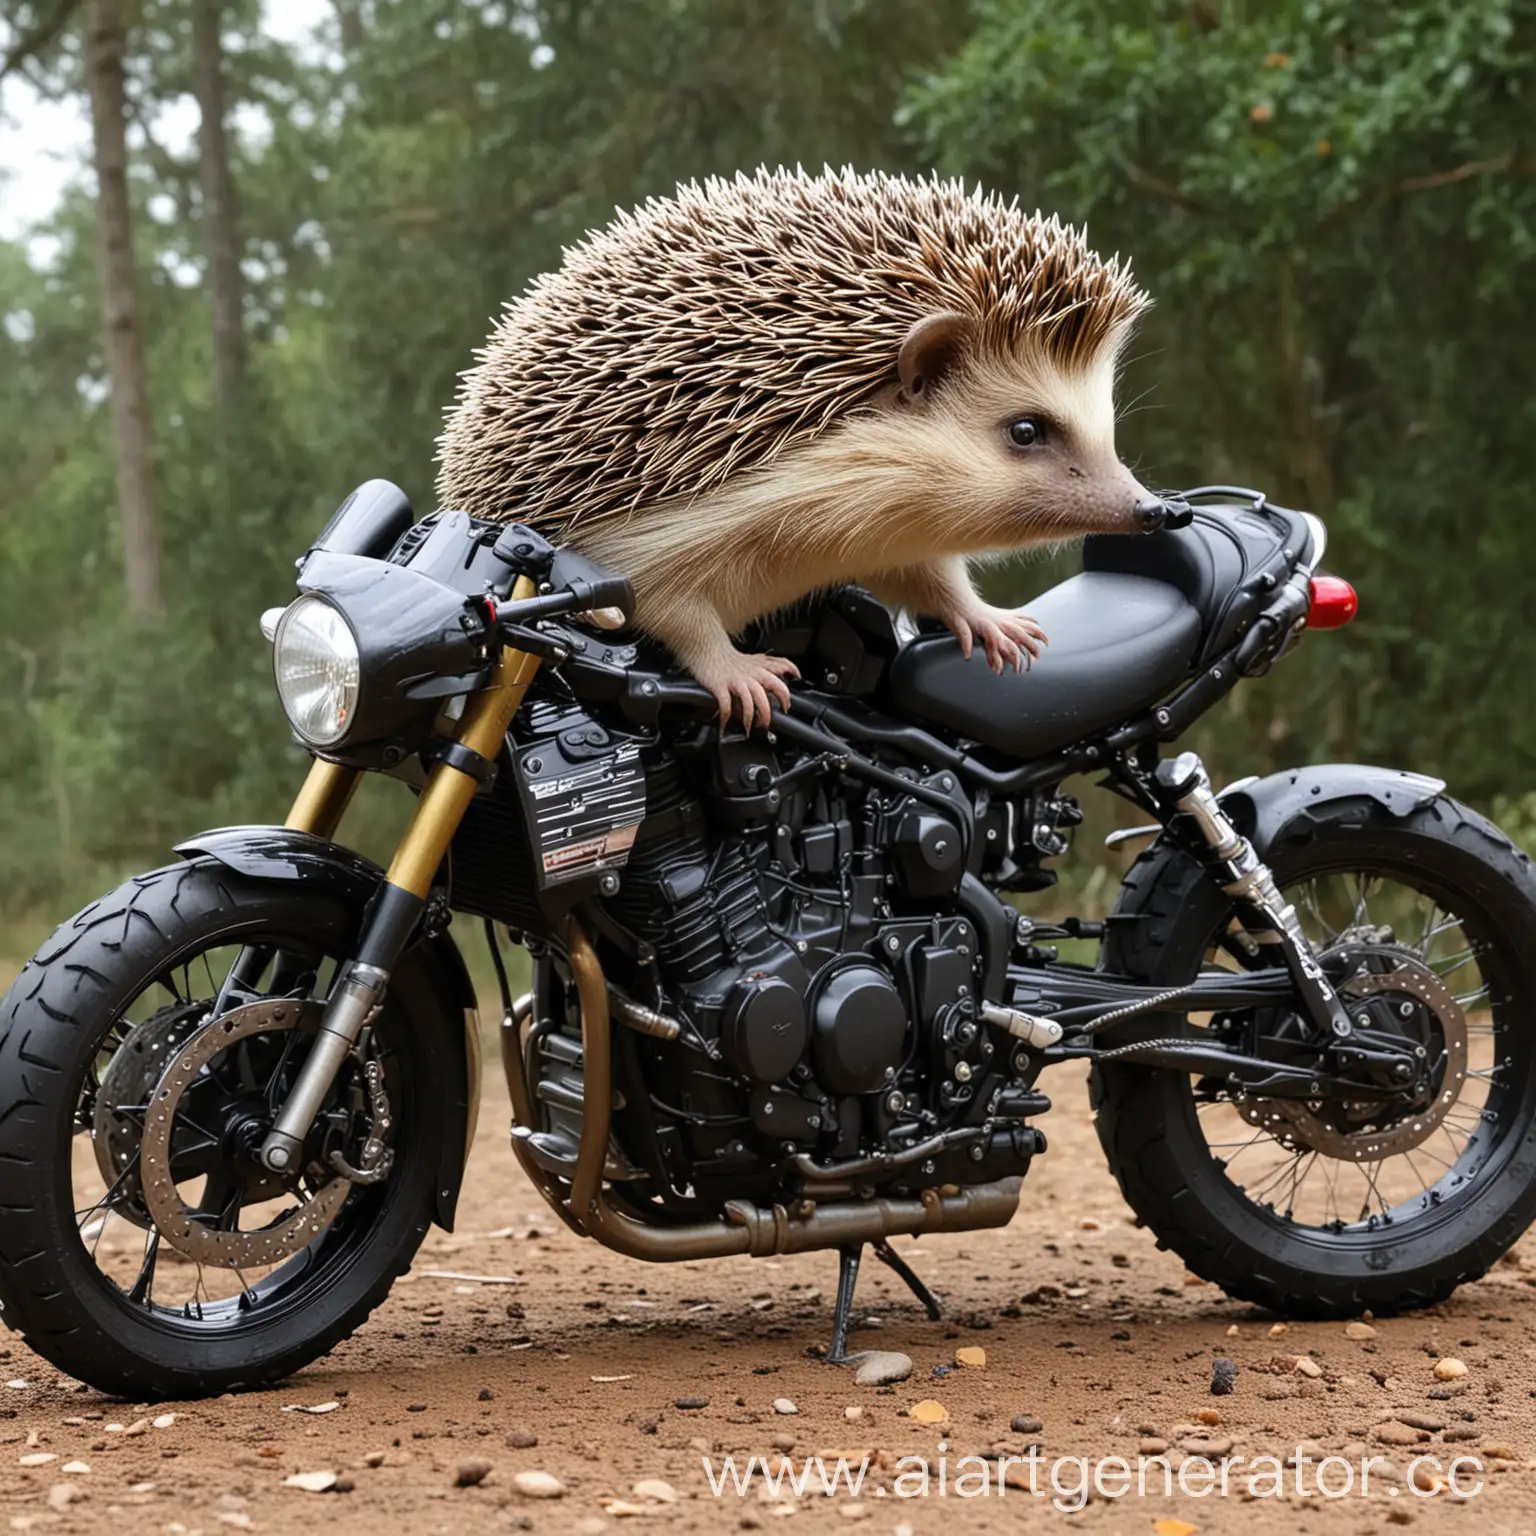 Hedgehog-Riding-Triumph-Tiger-Motorcycle-Adventure